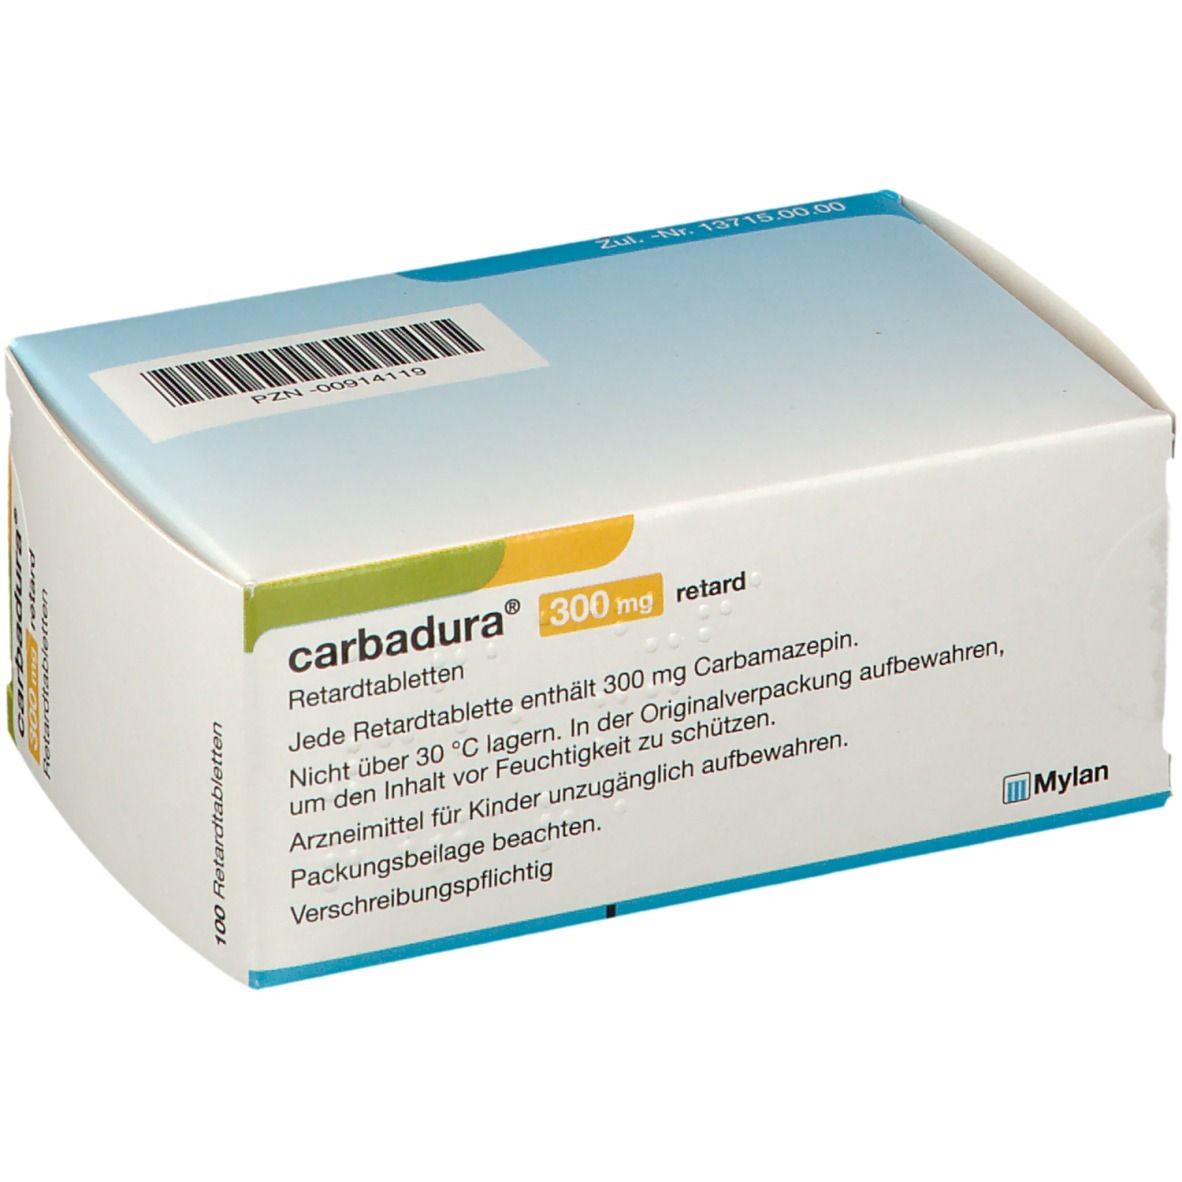 Carbadura® 300 mg retard